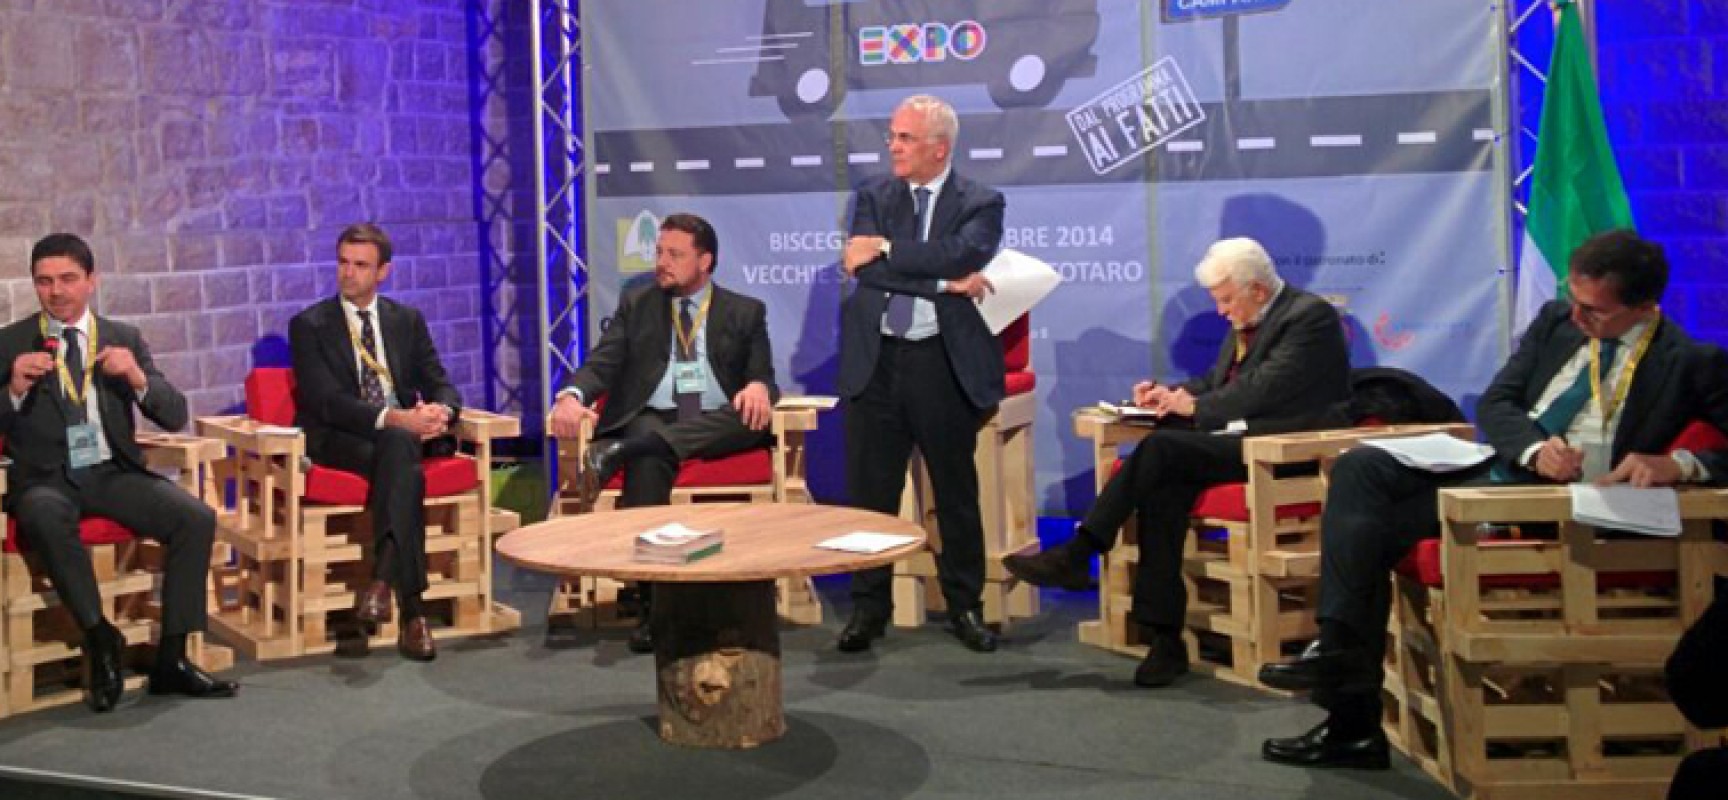 ExpoExtraTour: le priorità sono lotta alla contraffazione, biodiversità e tutela dei prodotti italiani